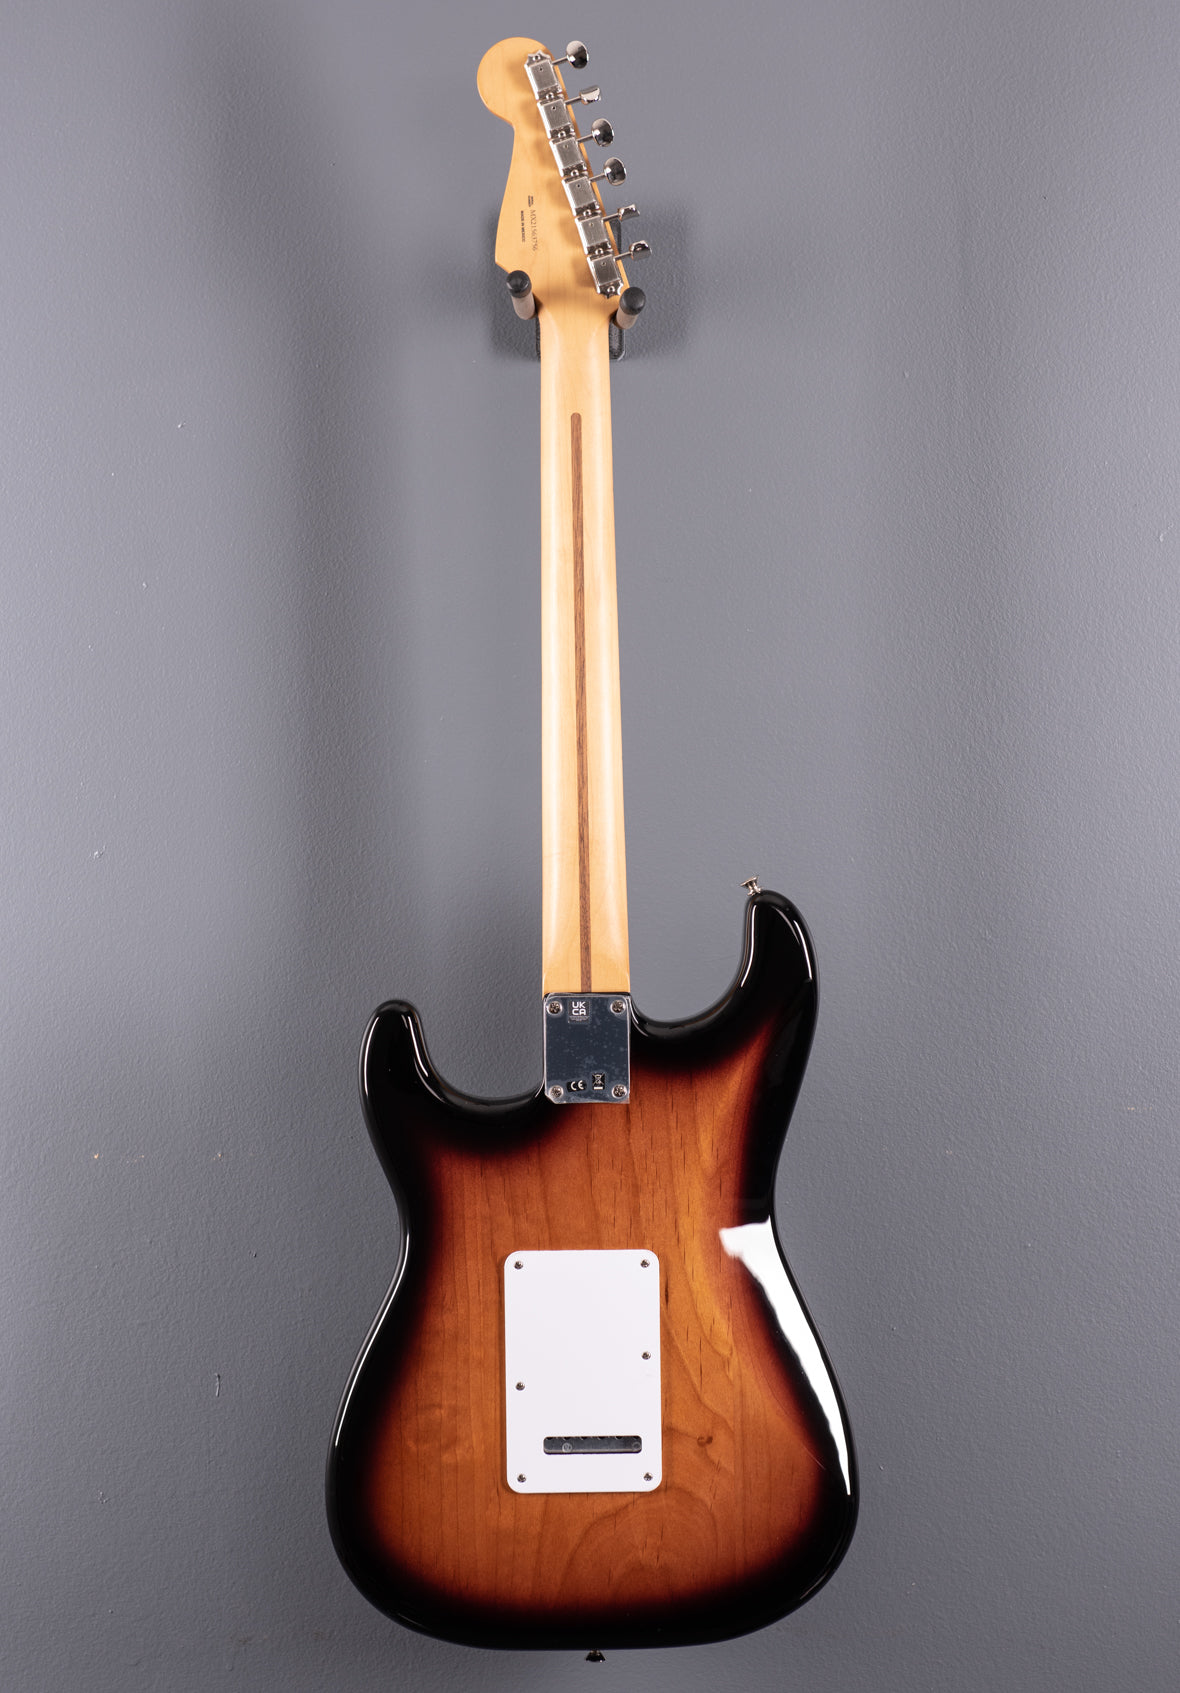 Vintera 50’s Stratocaster Modified – Two Color Sunburst